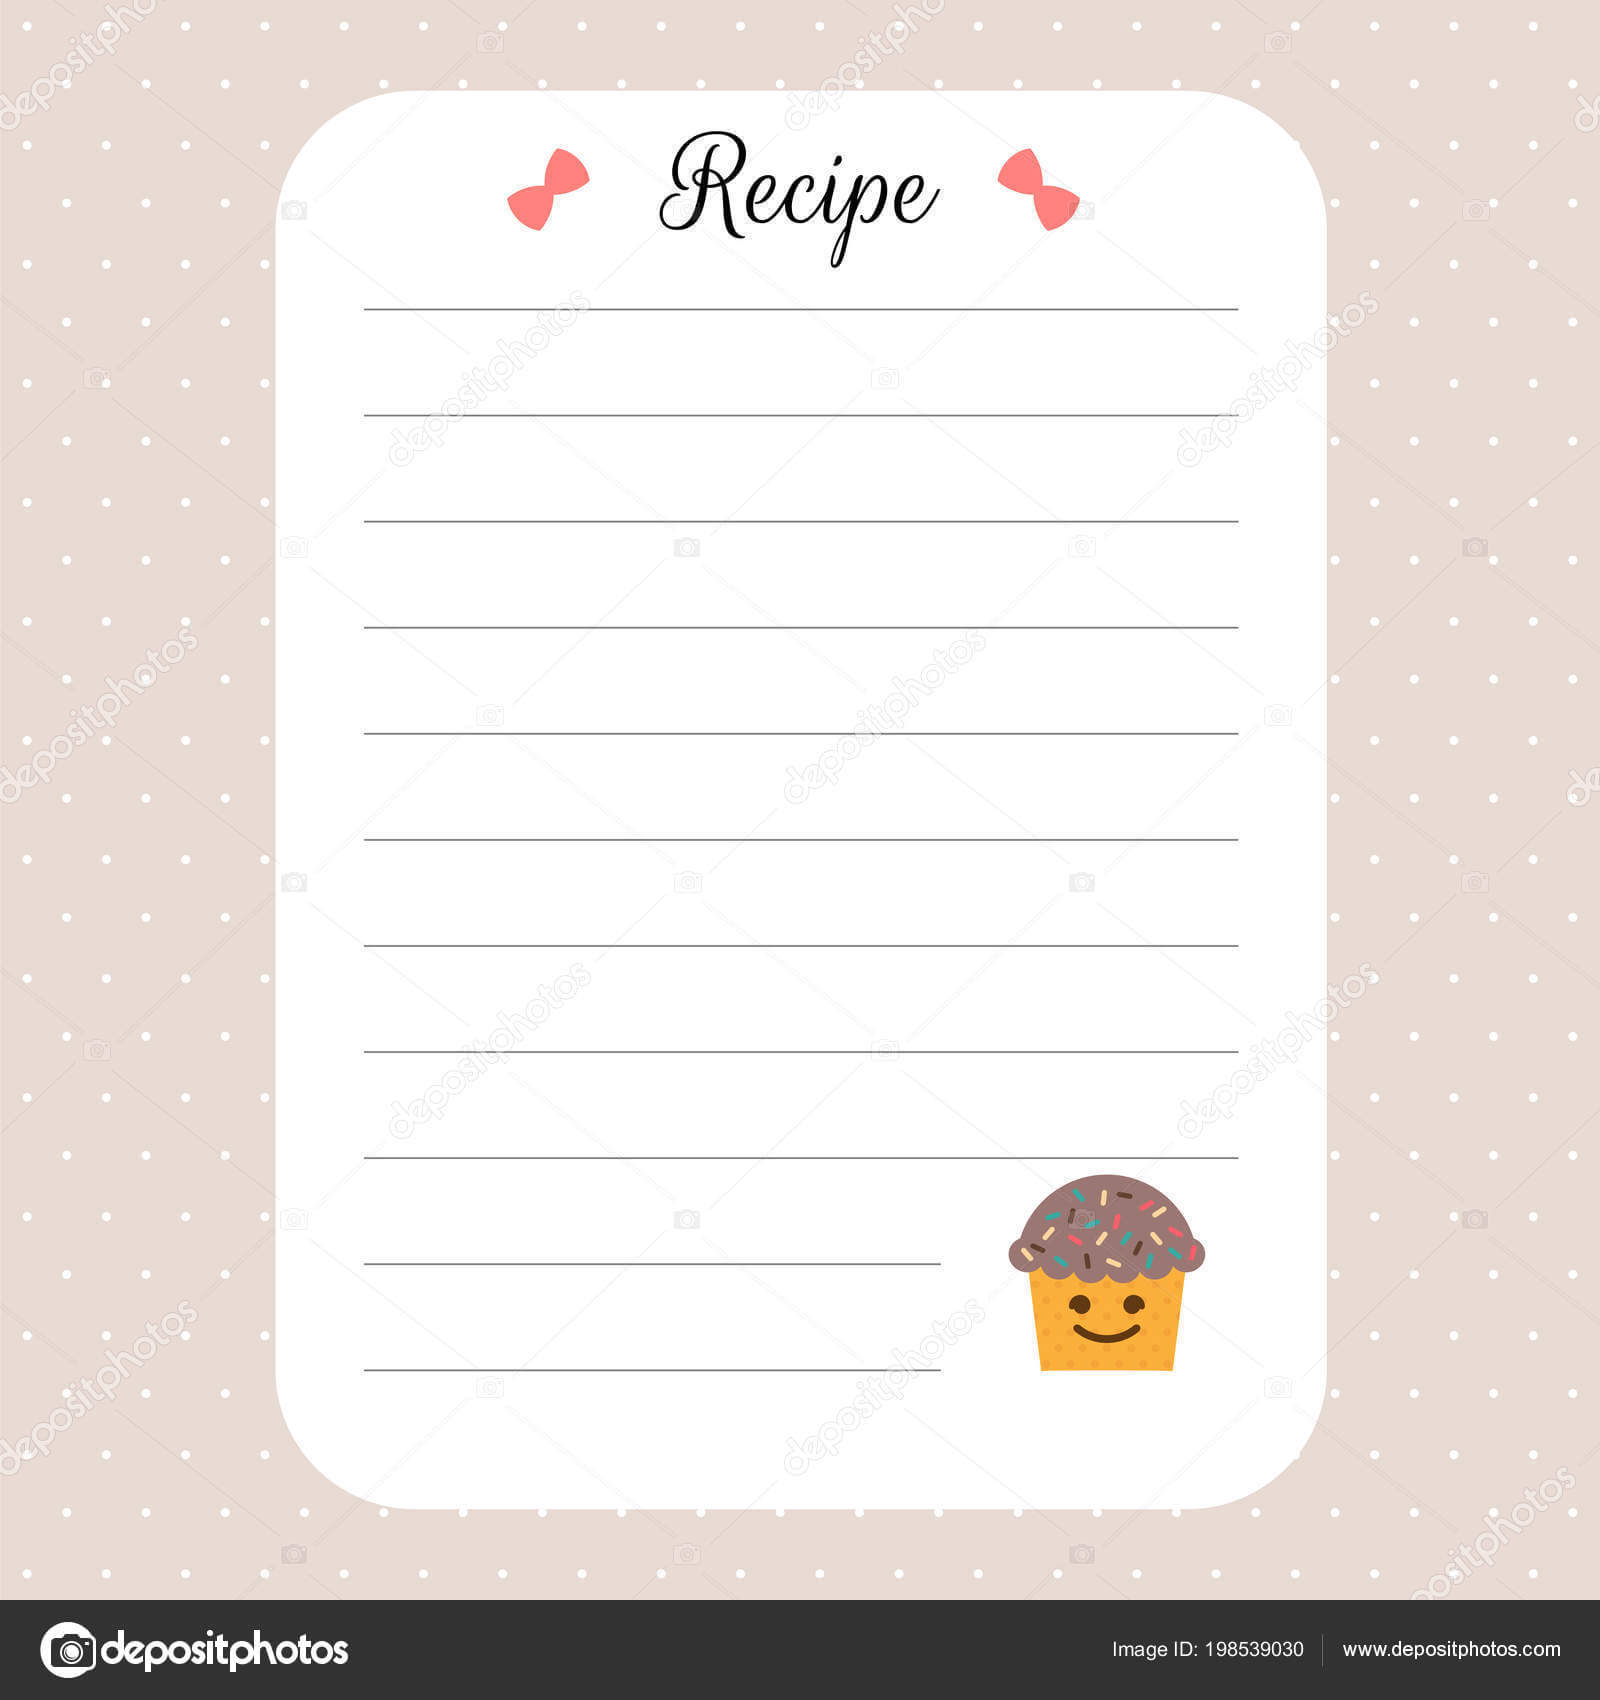 Restaurant Recipe Book Template | Recipe Card Template With Restaurant Recipe Card Template